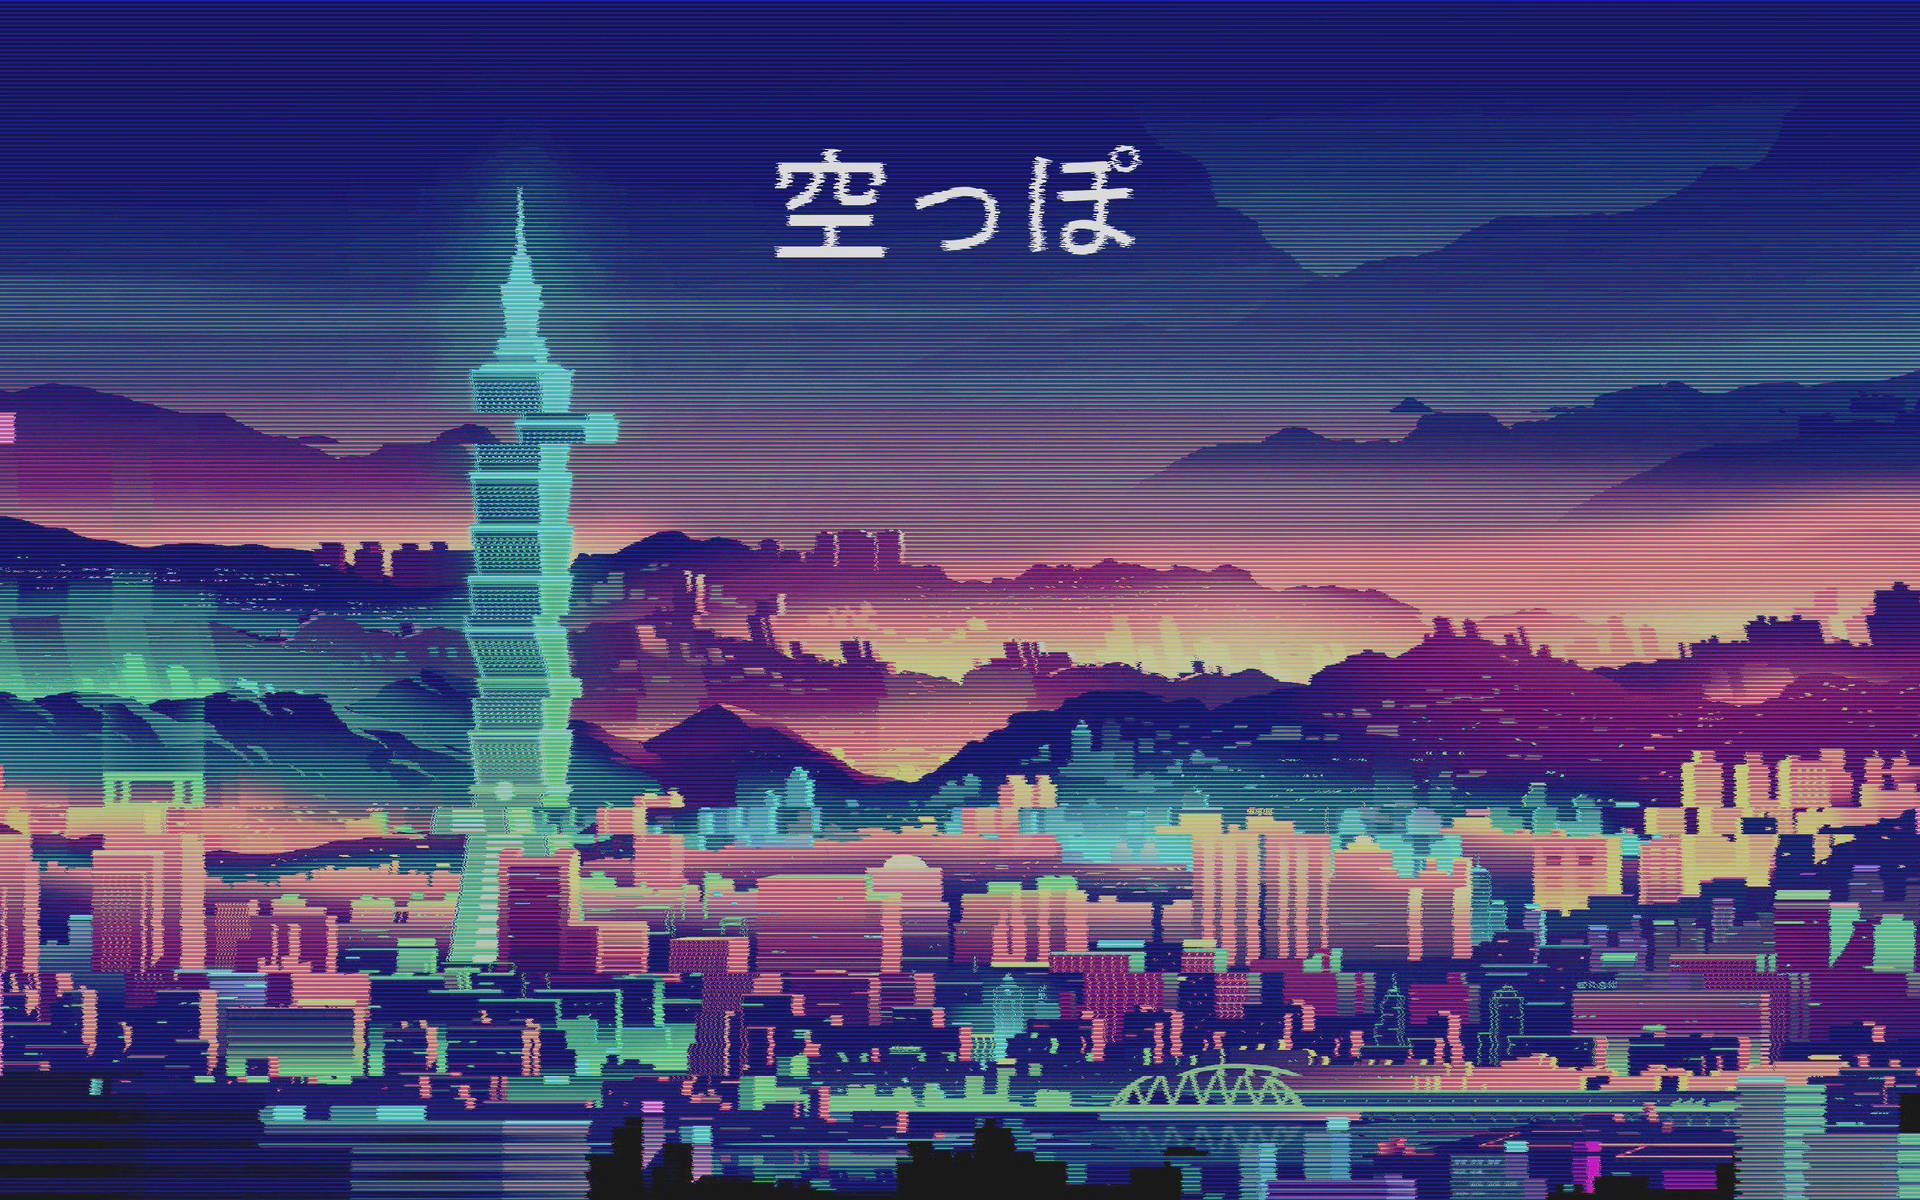 4k Aesthetic Anime Vaporwave Style Background